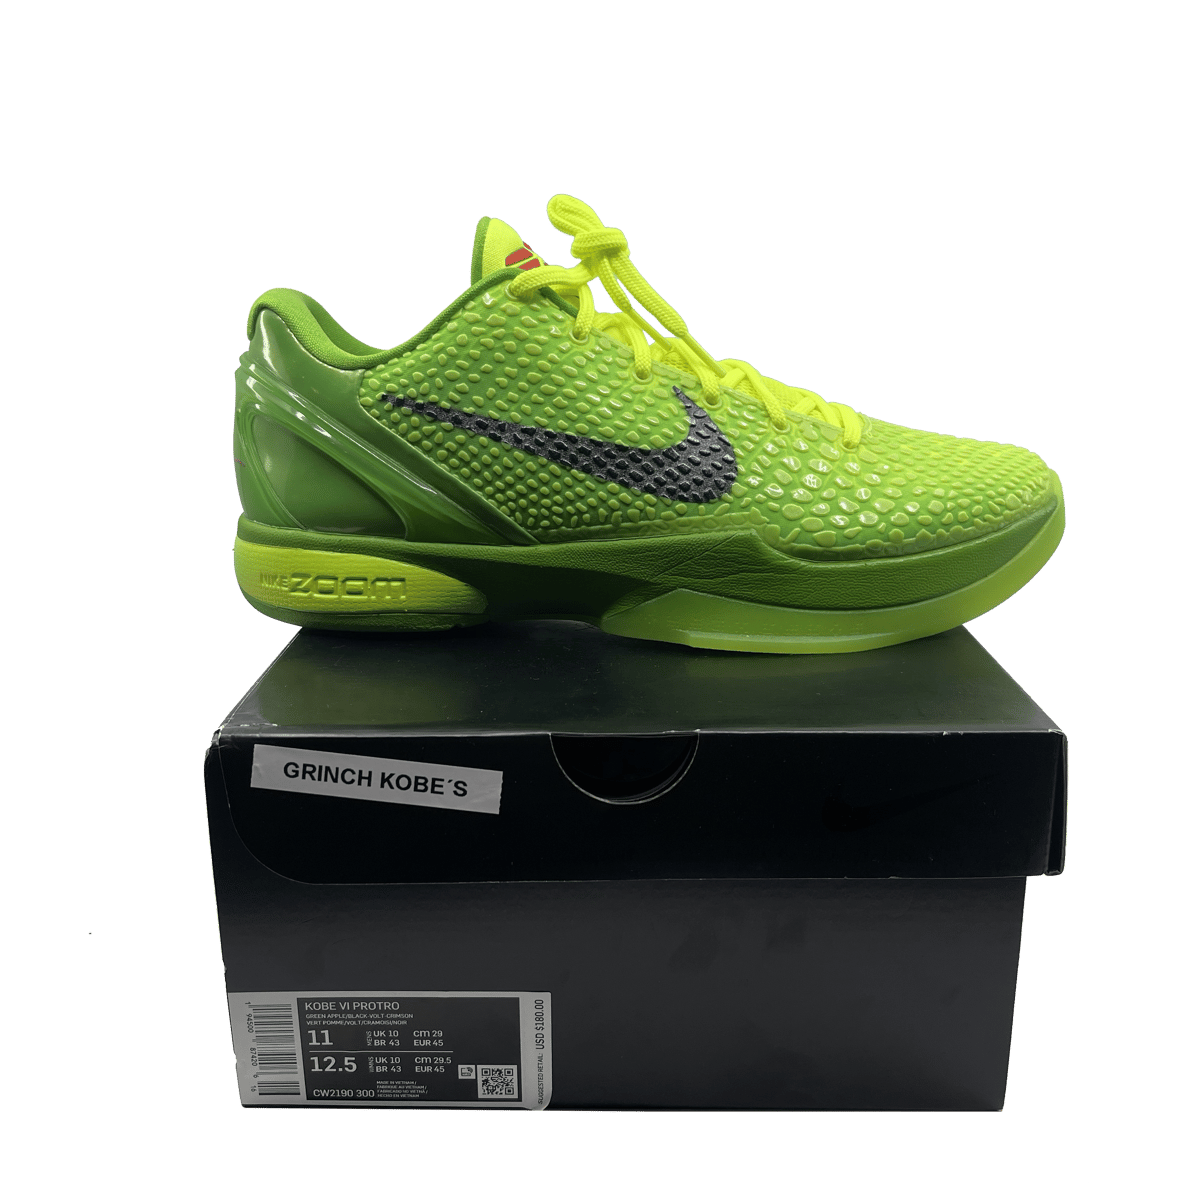 Nike Kobe 6 kobe 8 grinch Protro "Grinch": Size 11